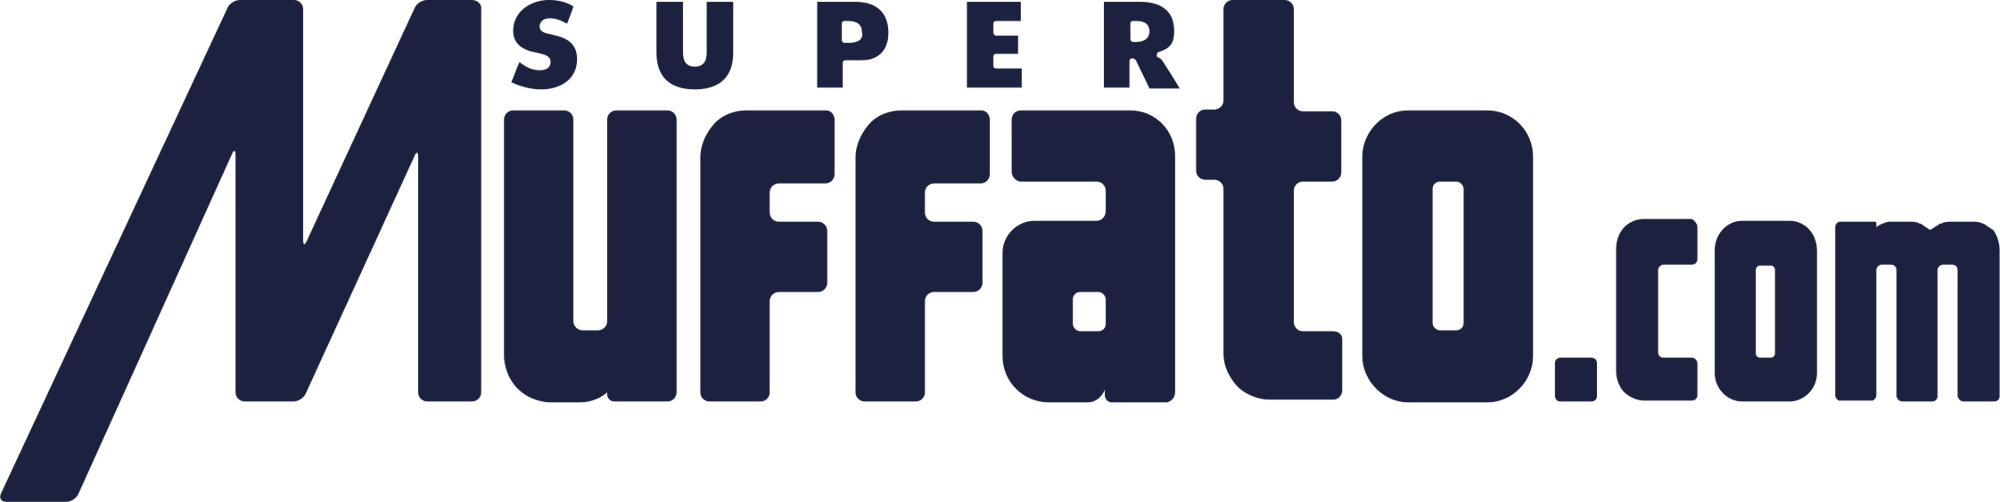 Logo_Super_Muffato_2021.svg